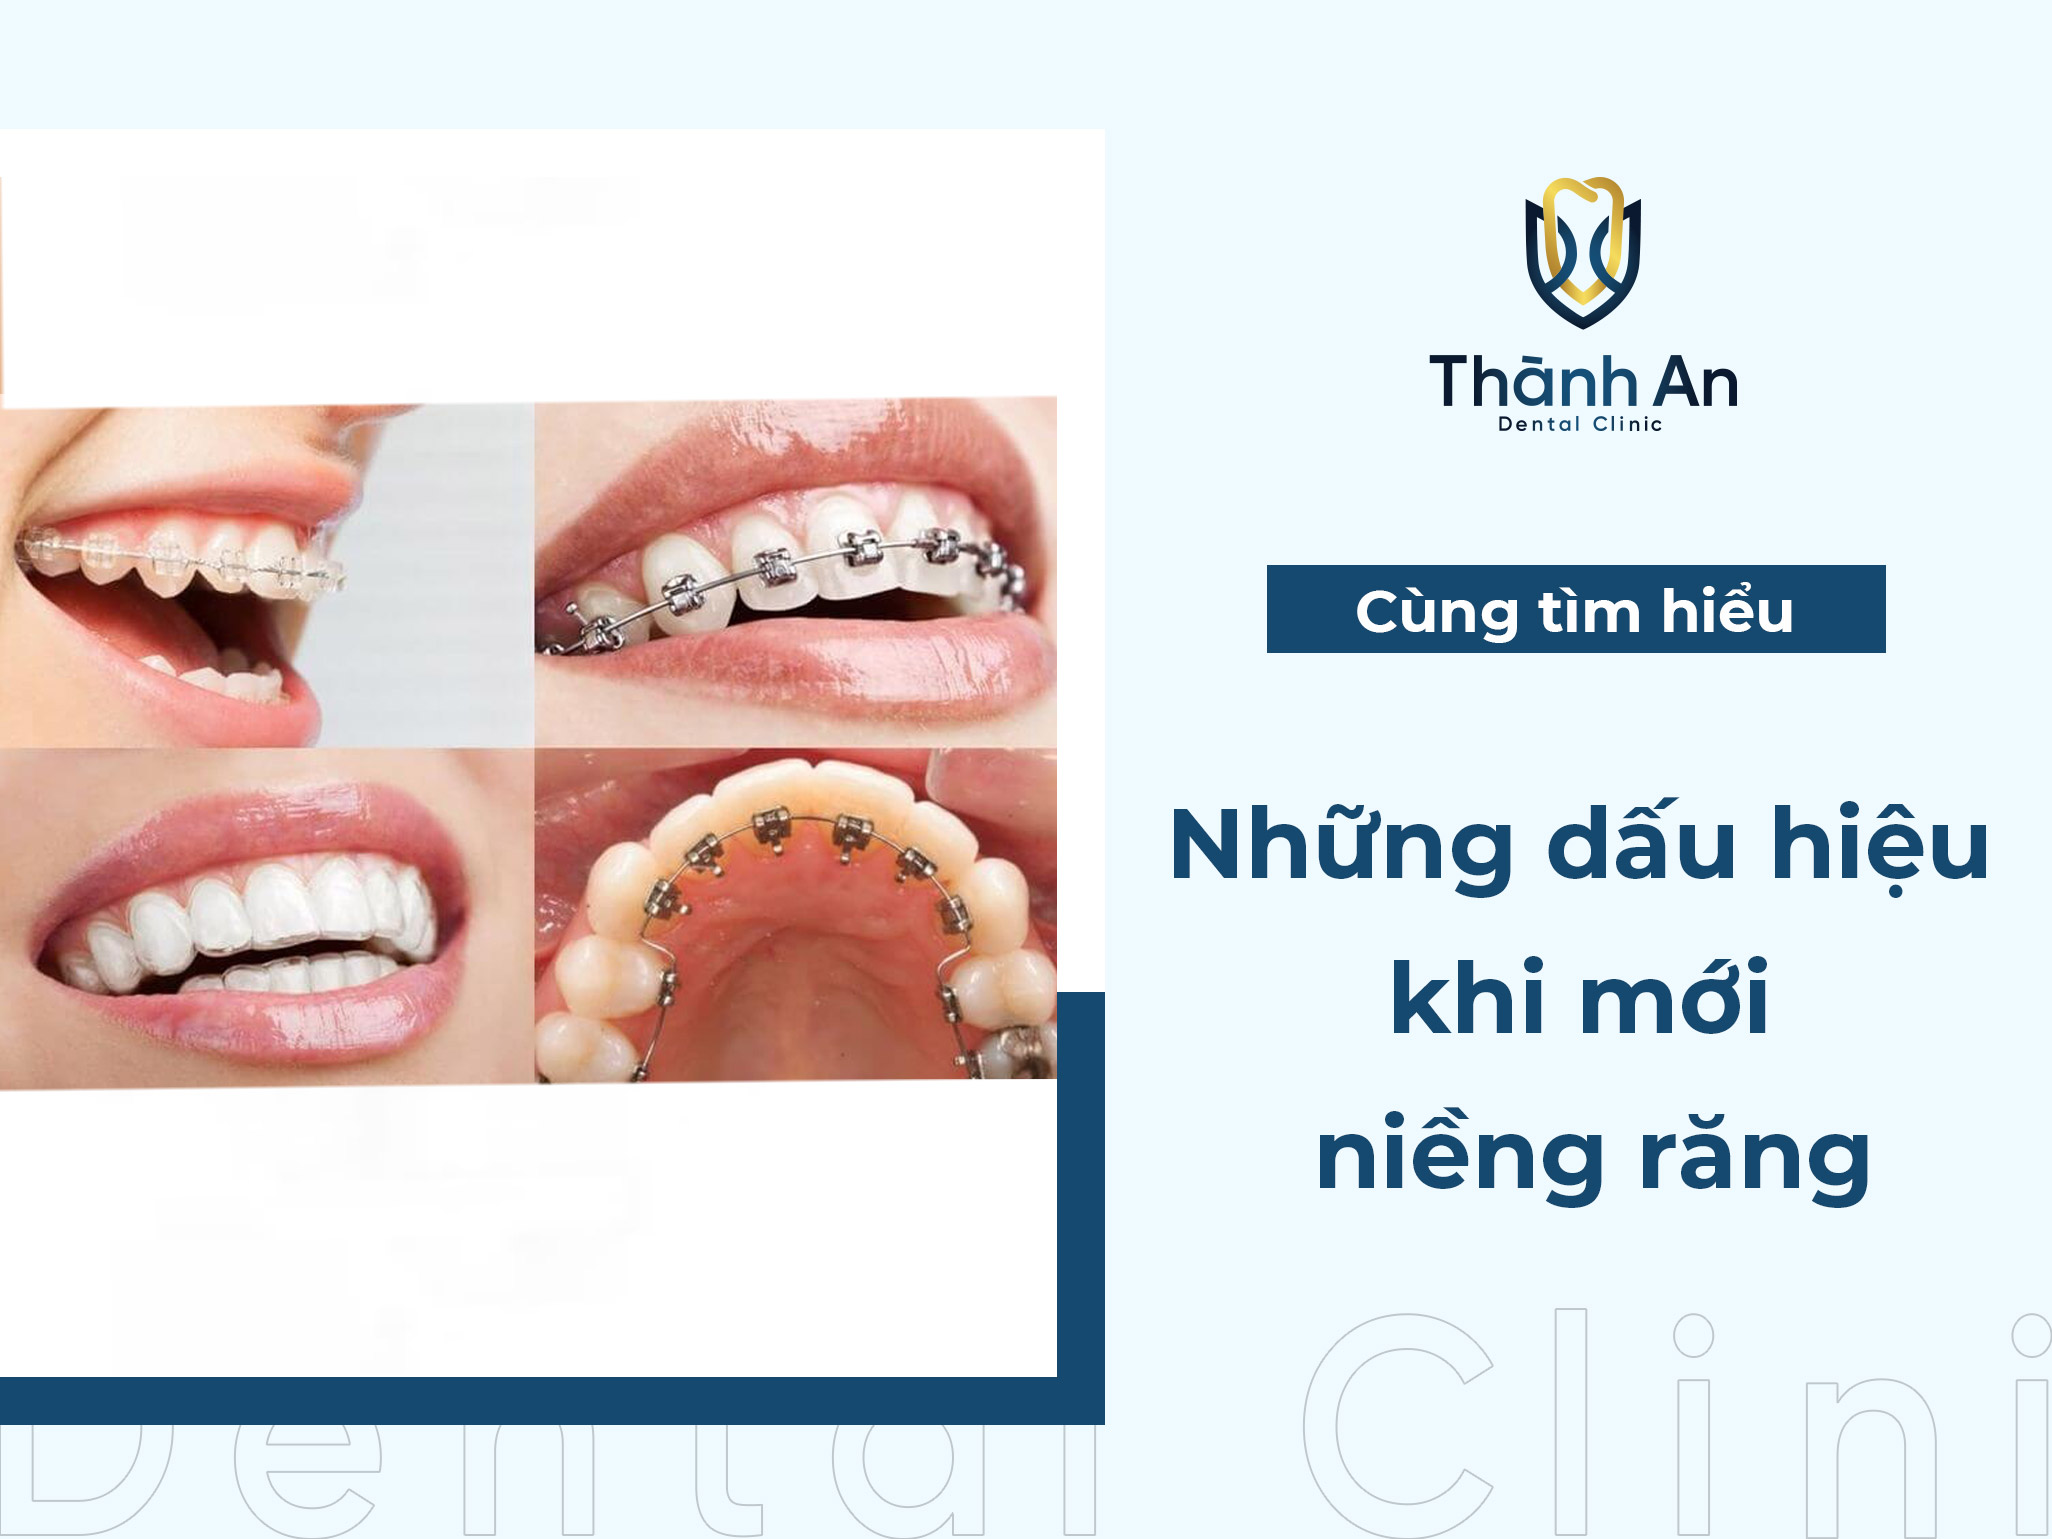 Những dấu hiệu khi mới niềng răng thường gặp và điều đáng lưu ý